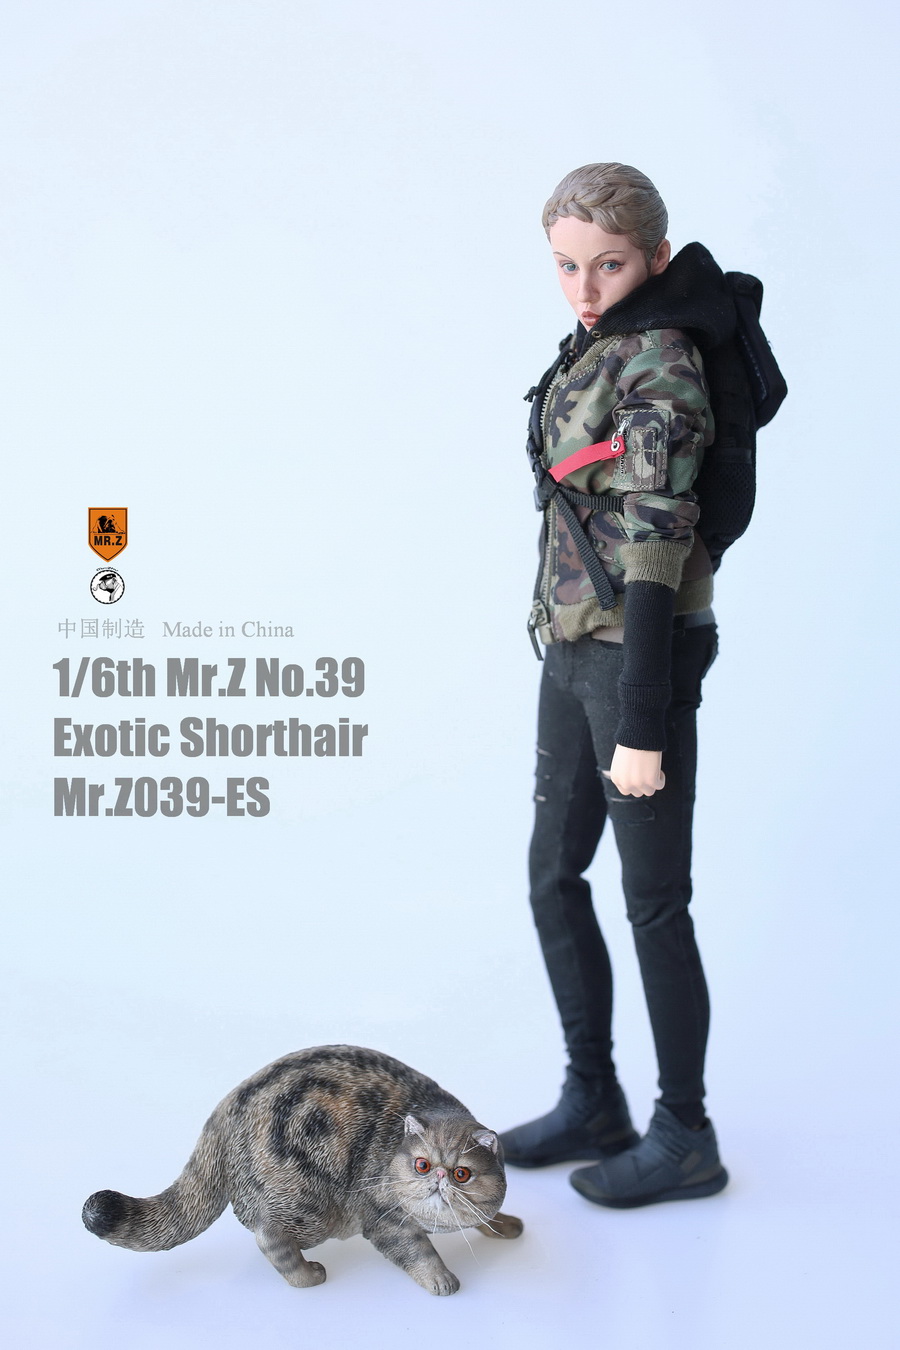 mrZ-cat-exotic14